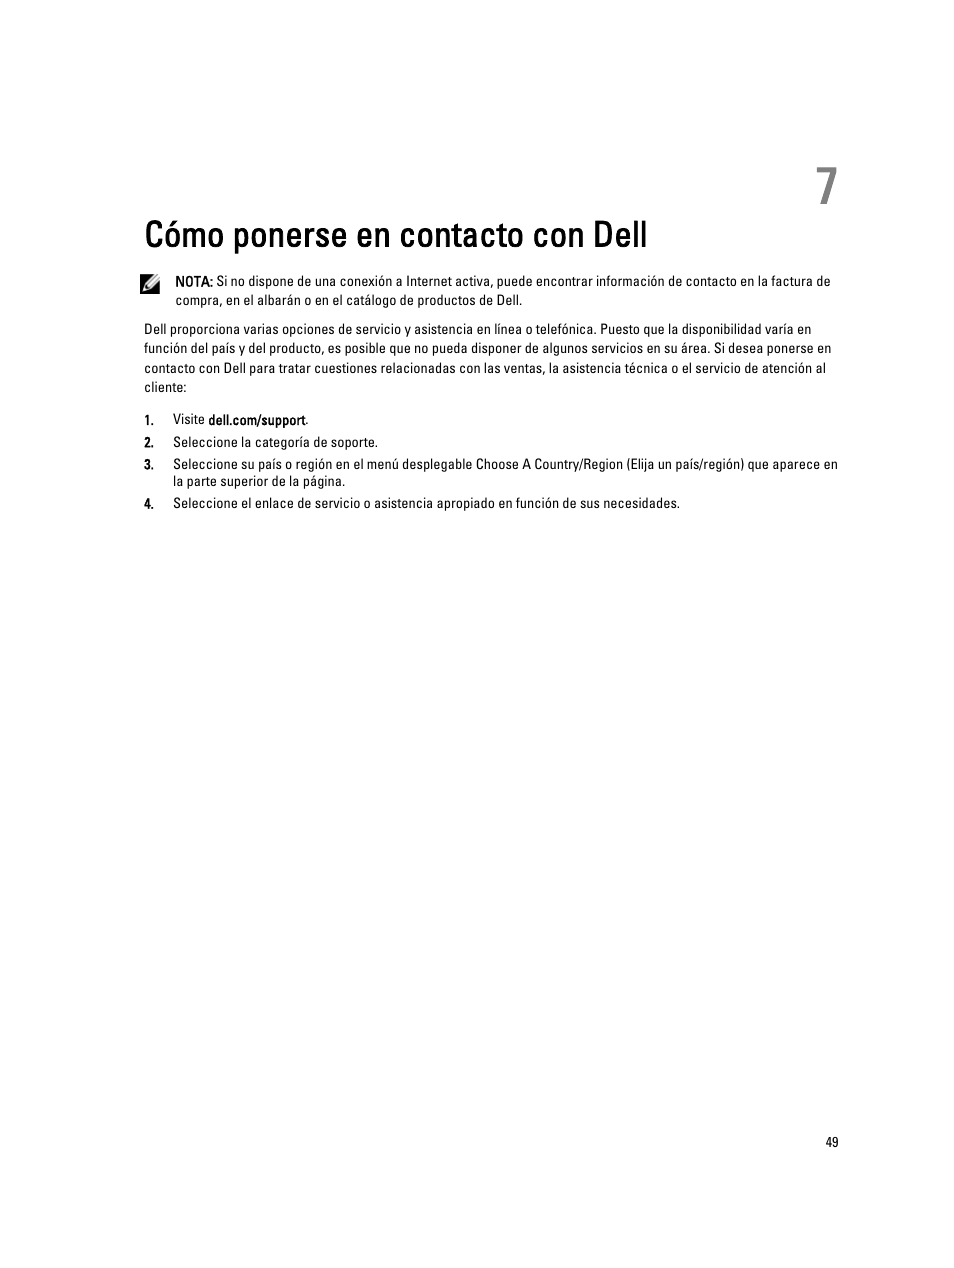 Cómo ponerse en contacto con dell, Capítulo 7: cómo ponerse en contacto con dell | Dell Latitude 10 (Late 2012) Manual del usuario | Página 49 / 49